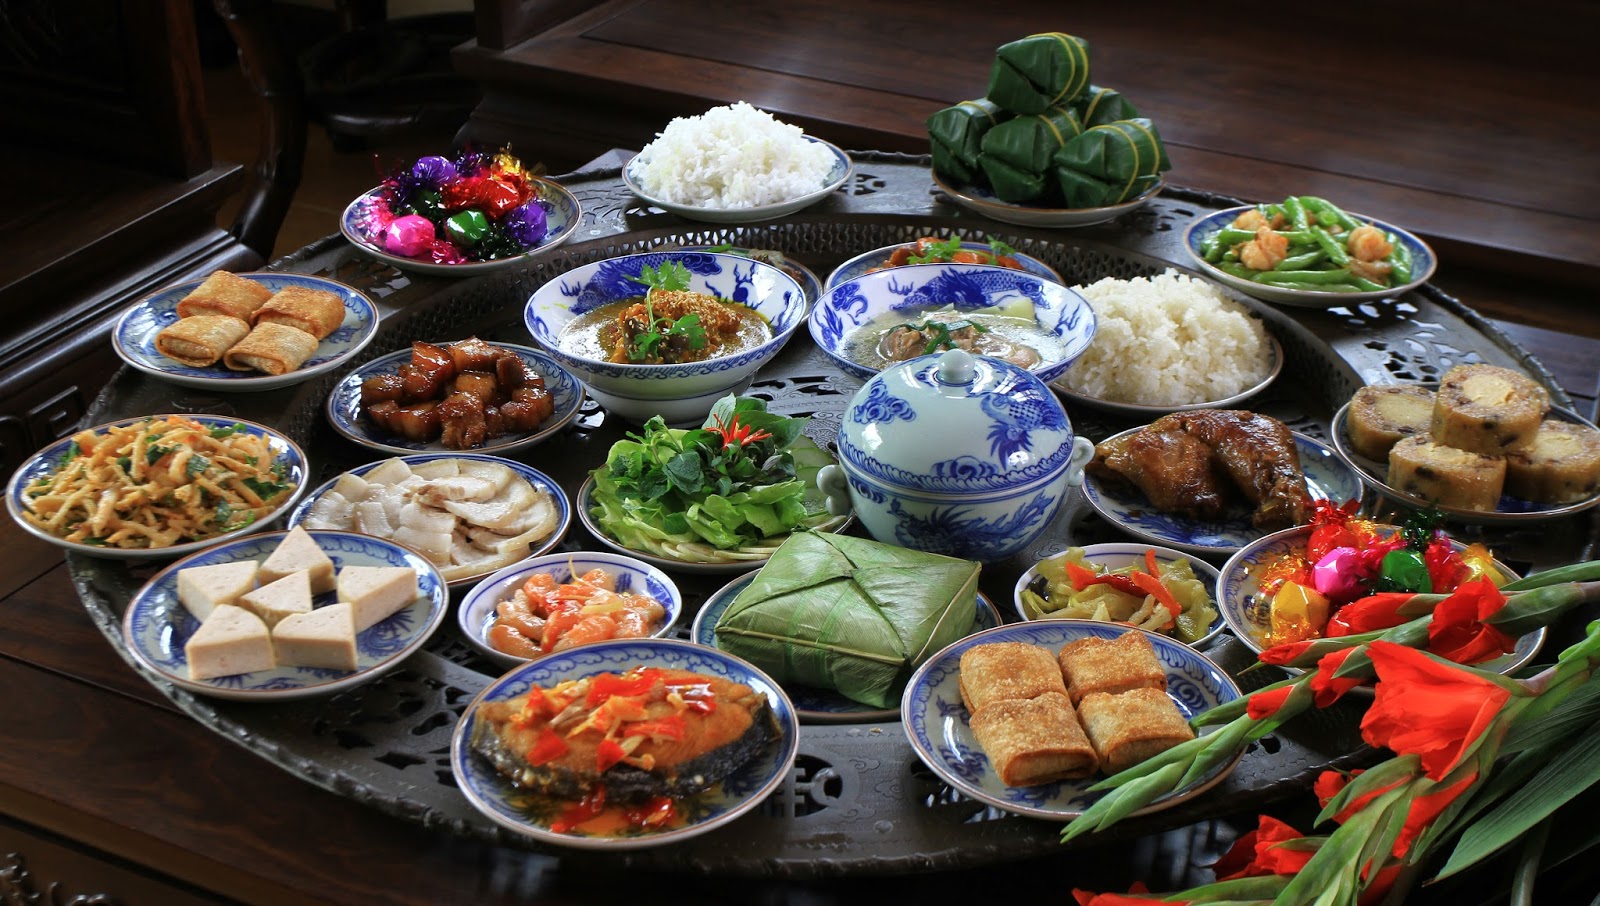 Văn hóa ẩm thực gia đình Việt Nam trong cuộc sống hiện đại